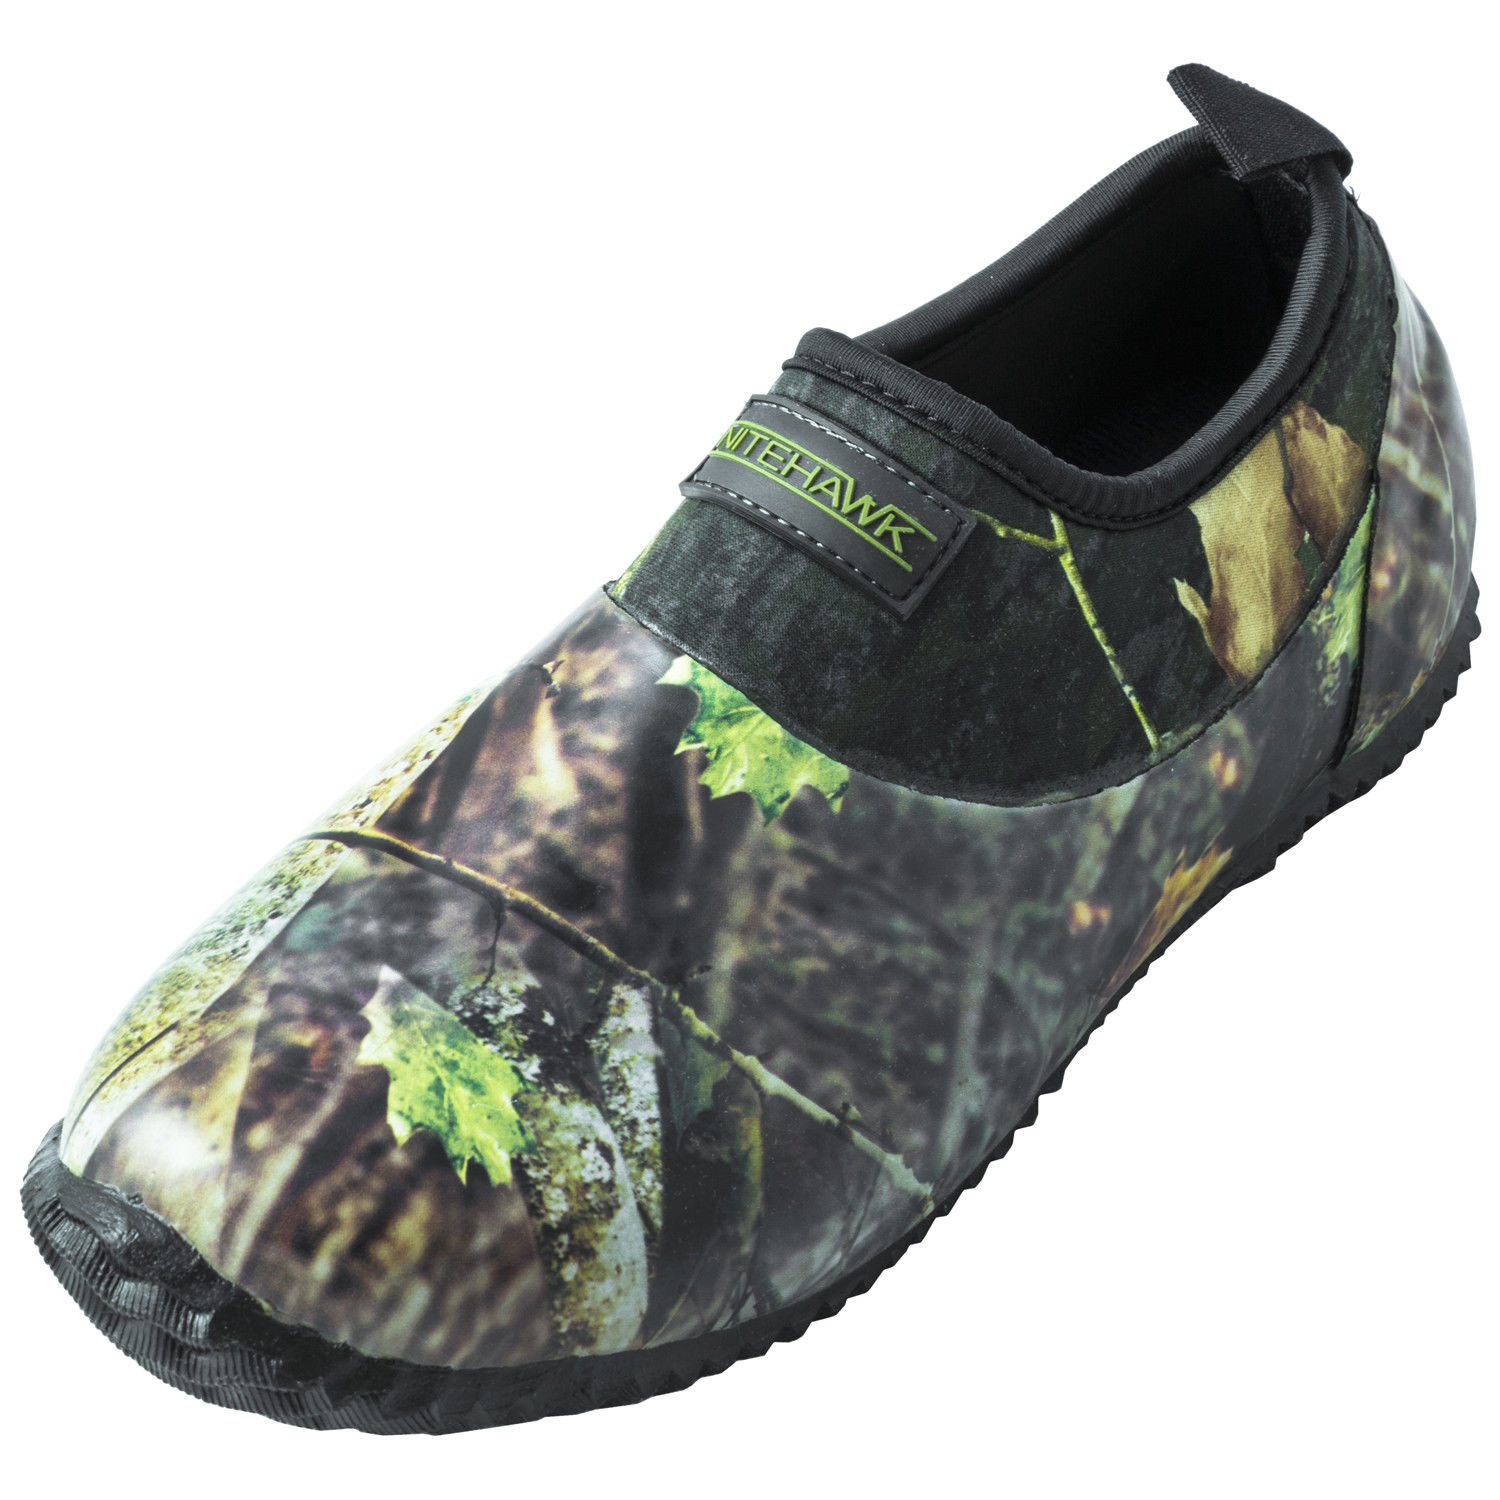 Nitehawk Camouflage Neoprene Slip On Waterproof Fishing/Hunting Shoes ...